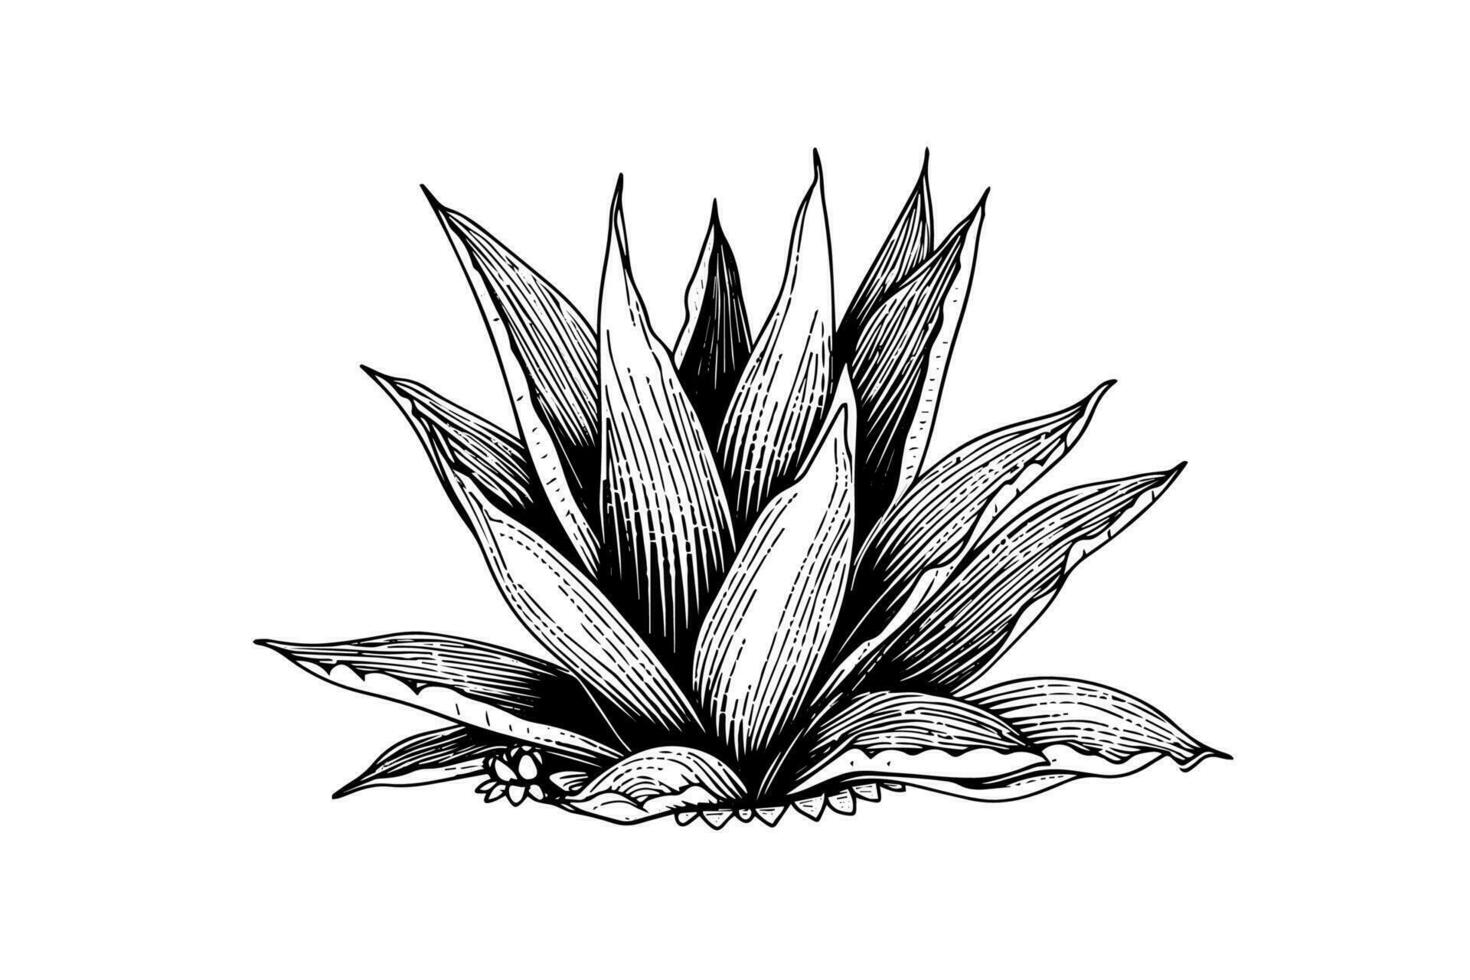 blå agave bläck skiss. tequila ingrediens vektor teckning. gravyr illustration av mexikansk växt.